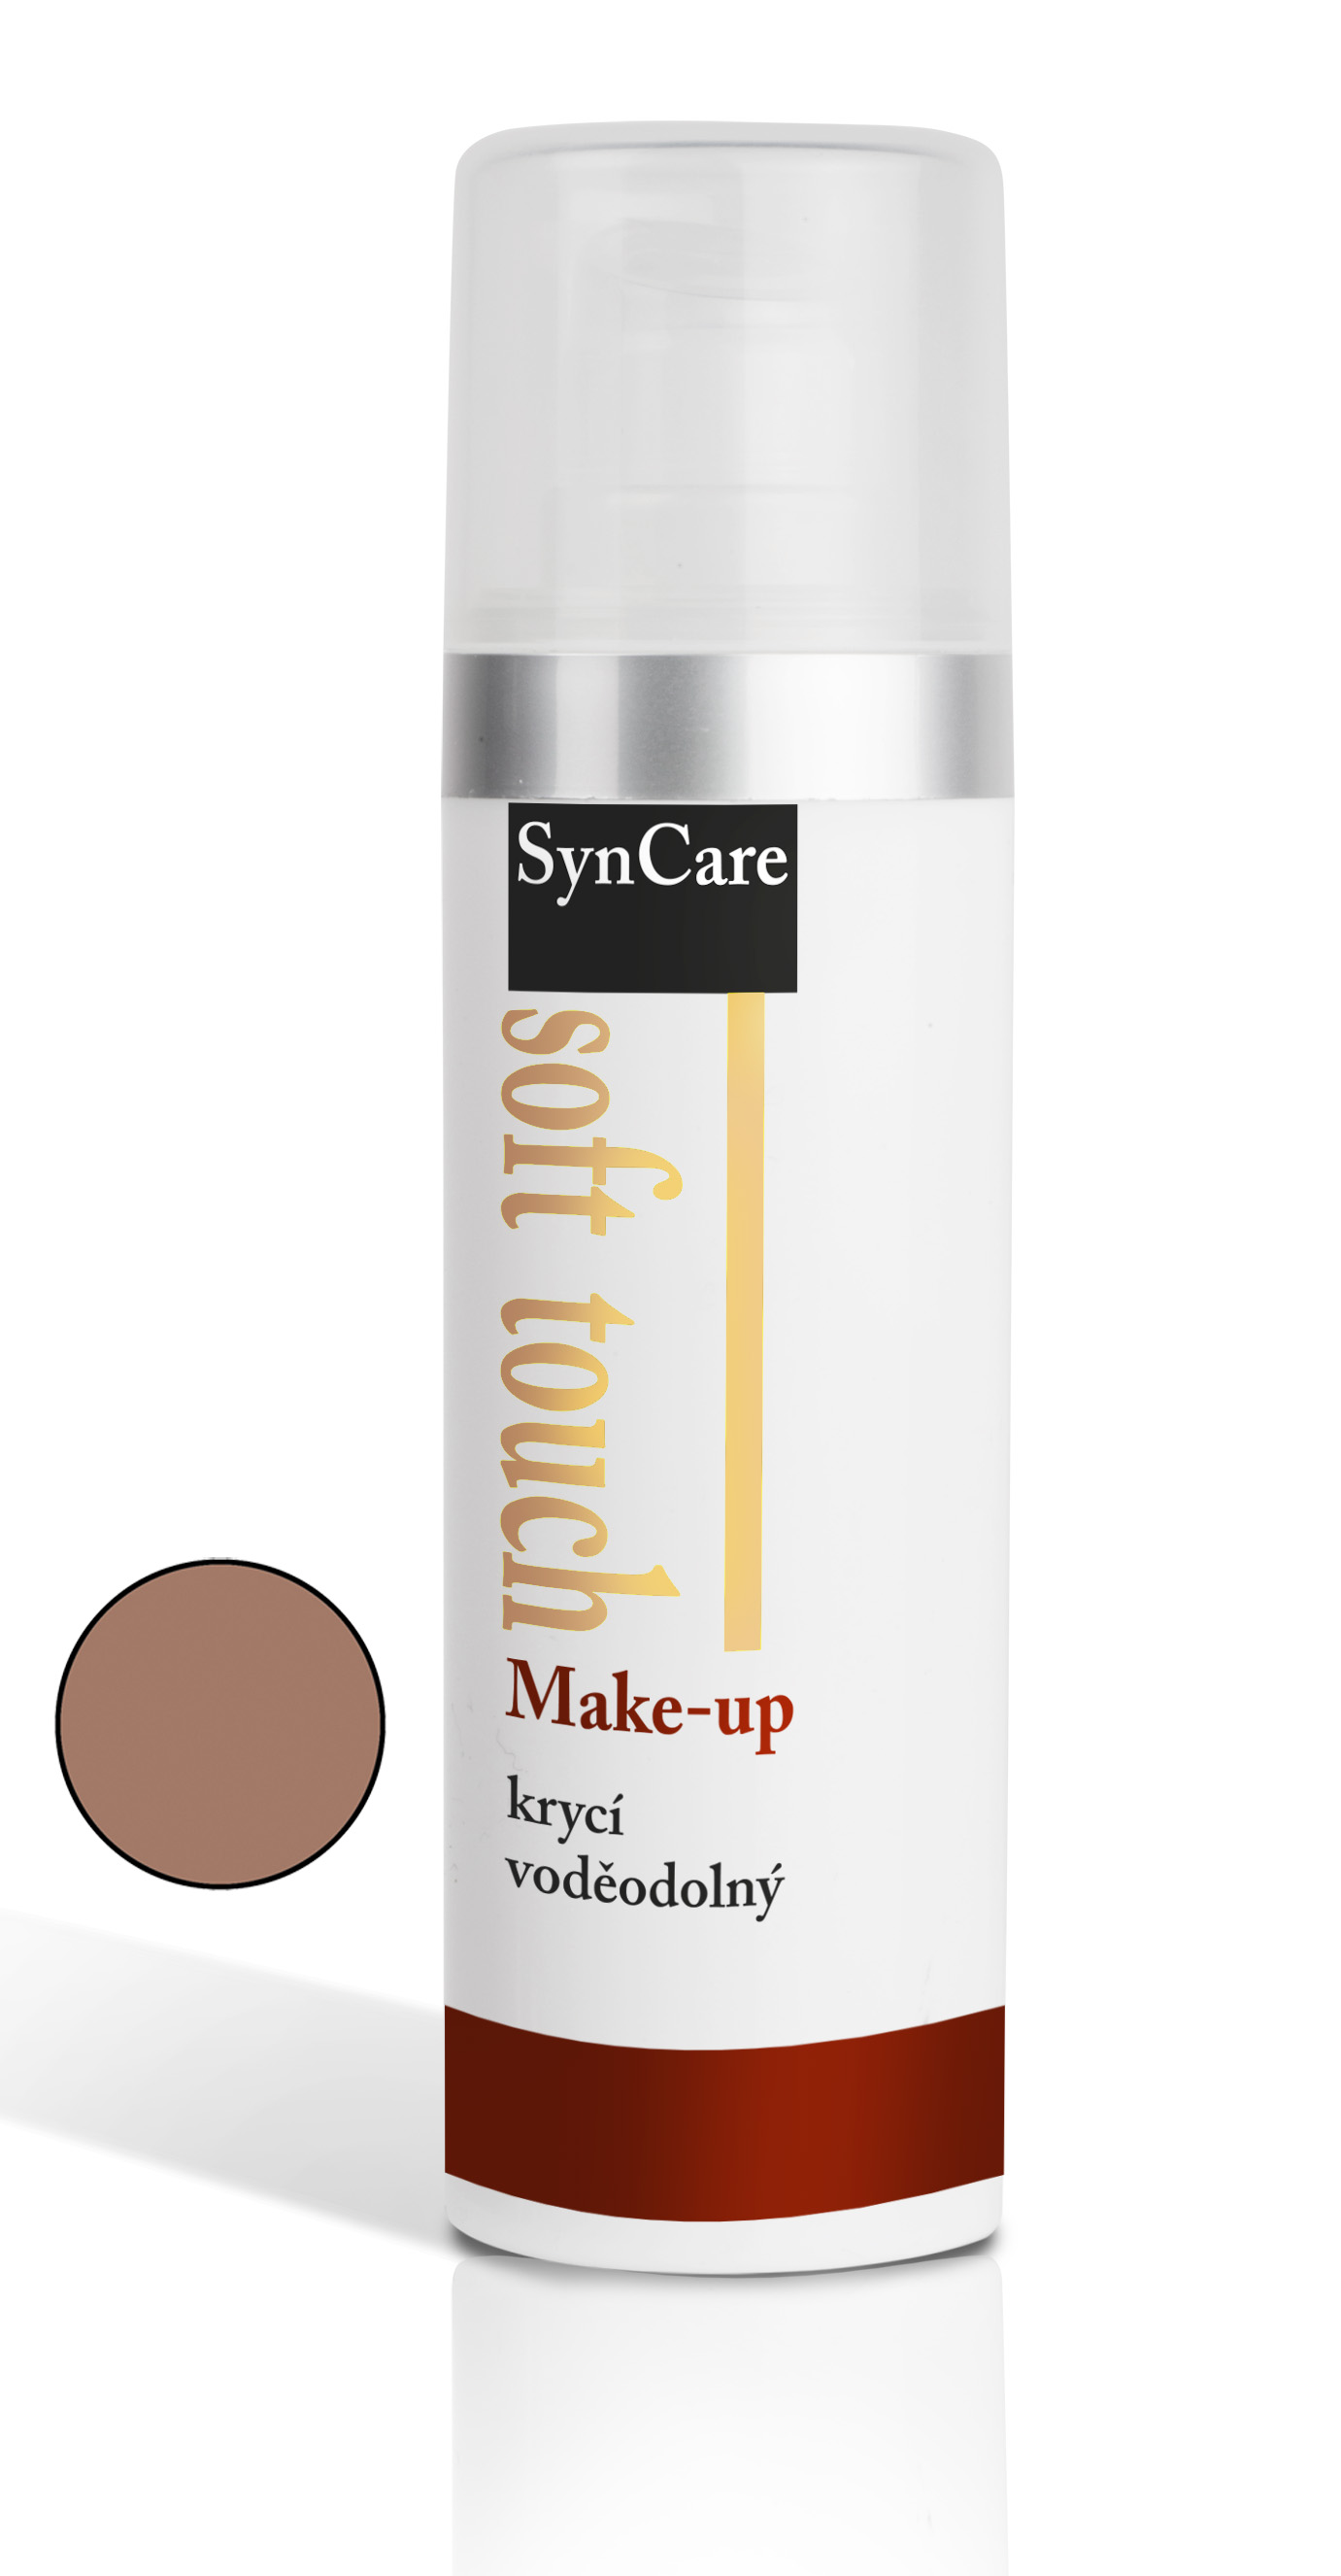 SynCare Soft Touch krycí voděodolný make-up 402 30 ml